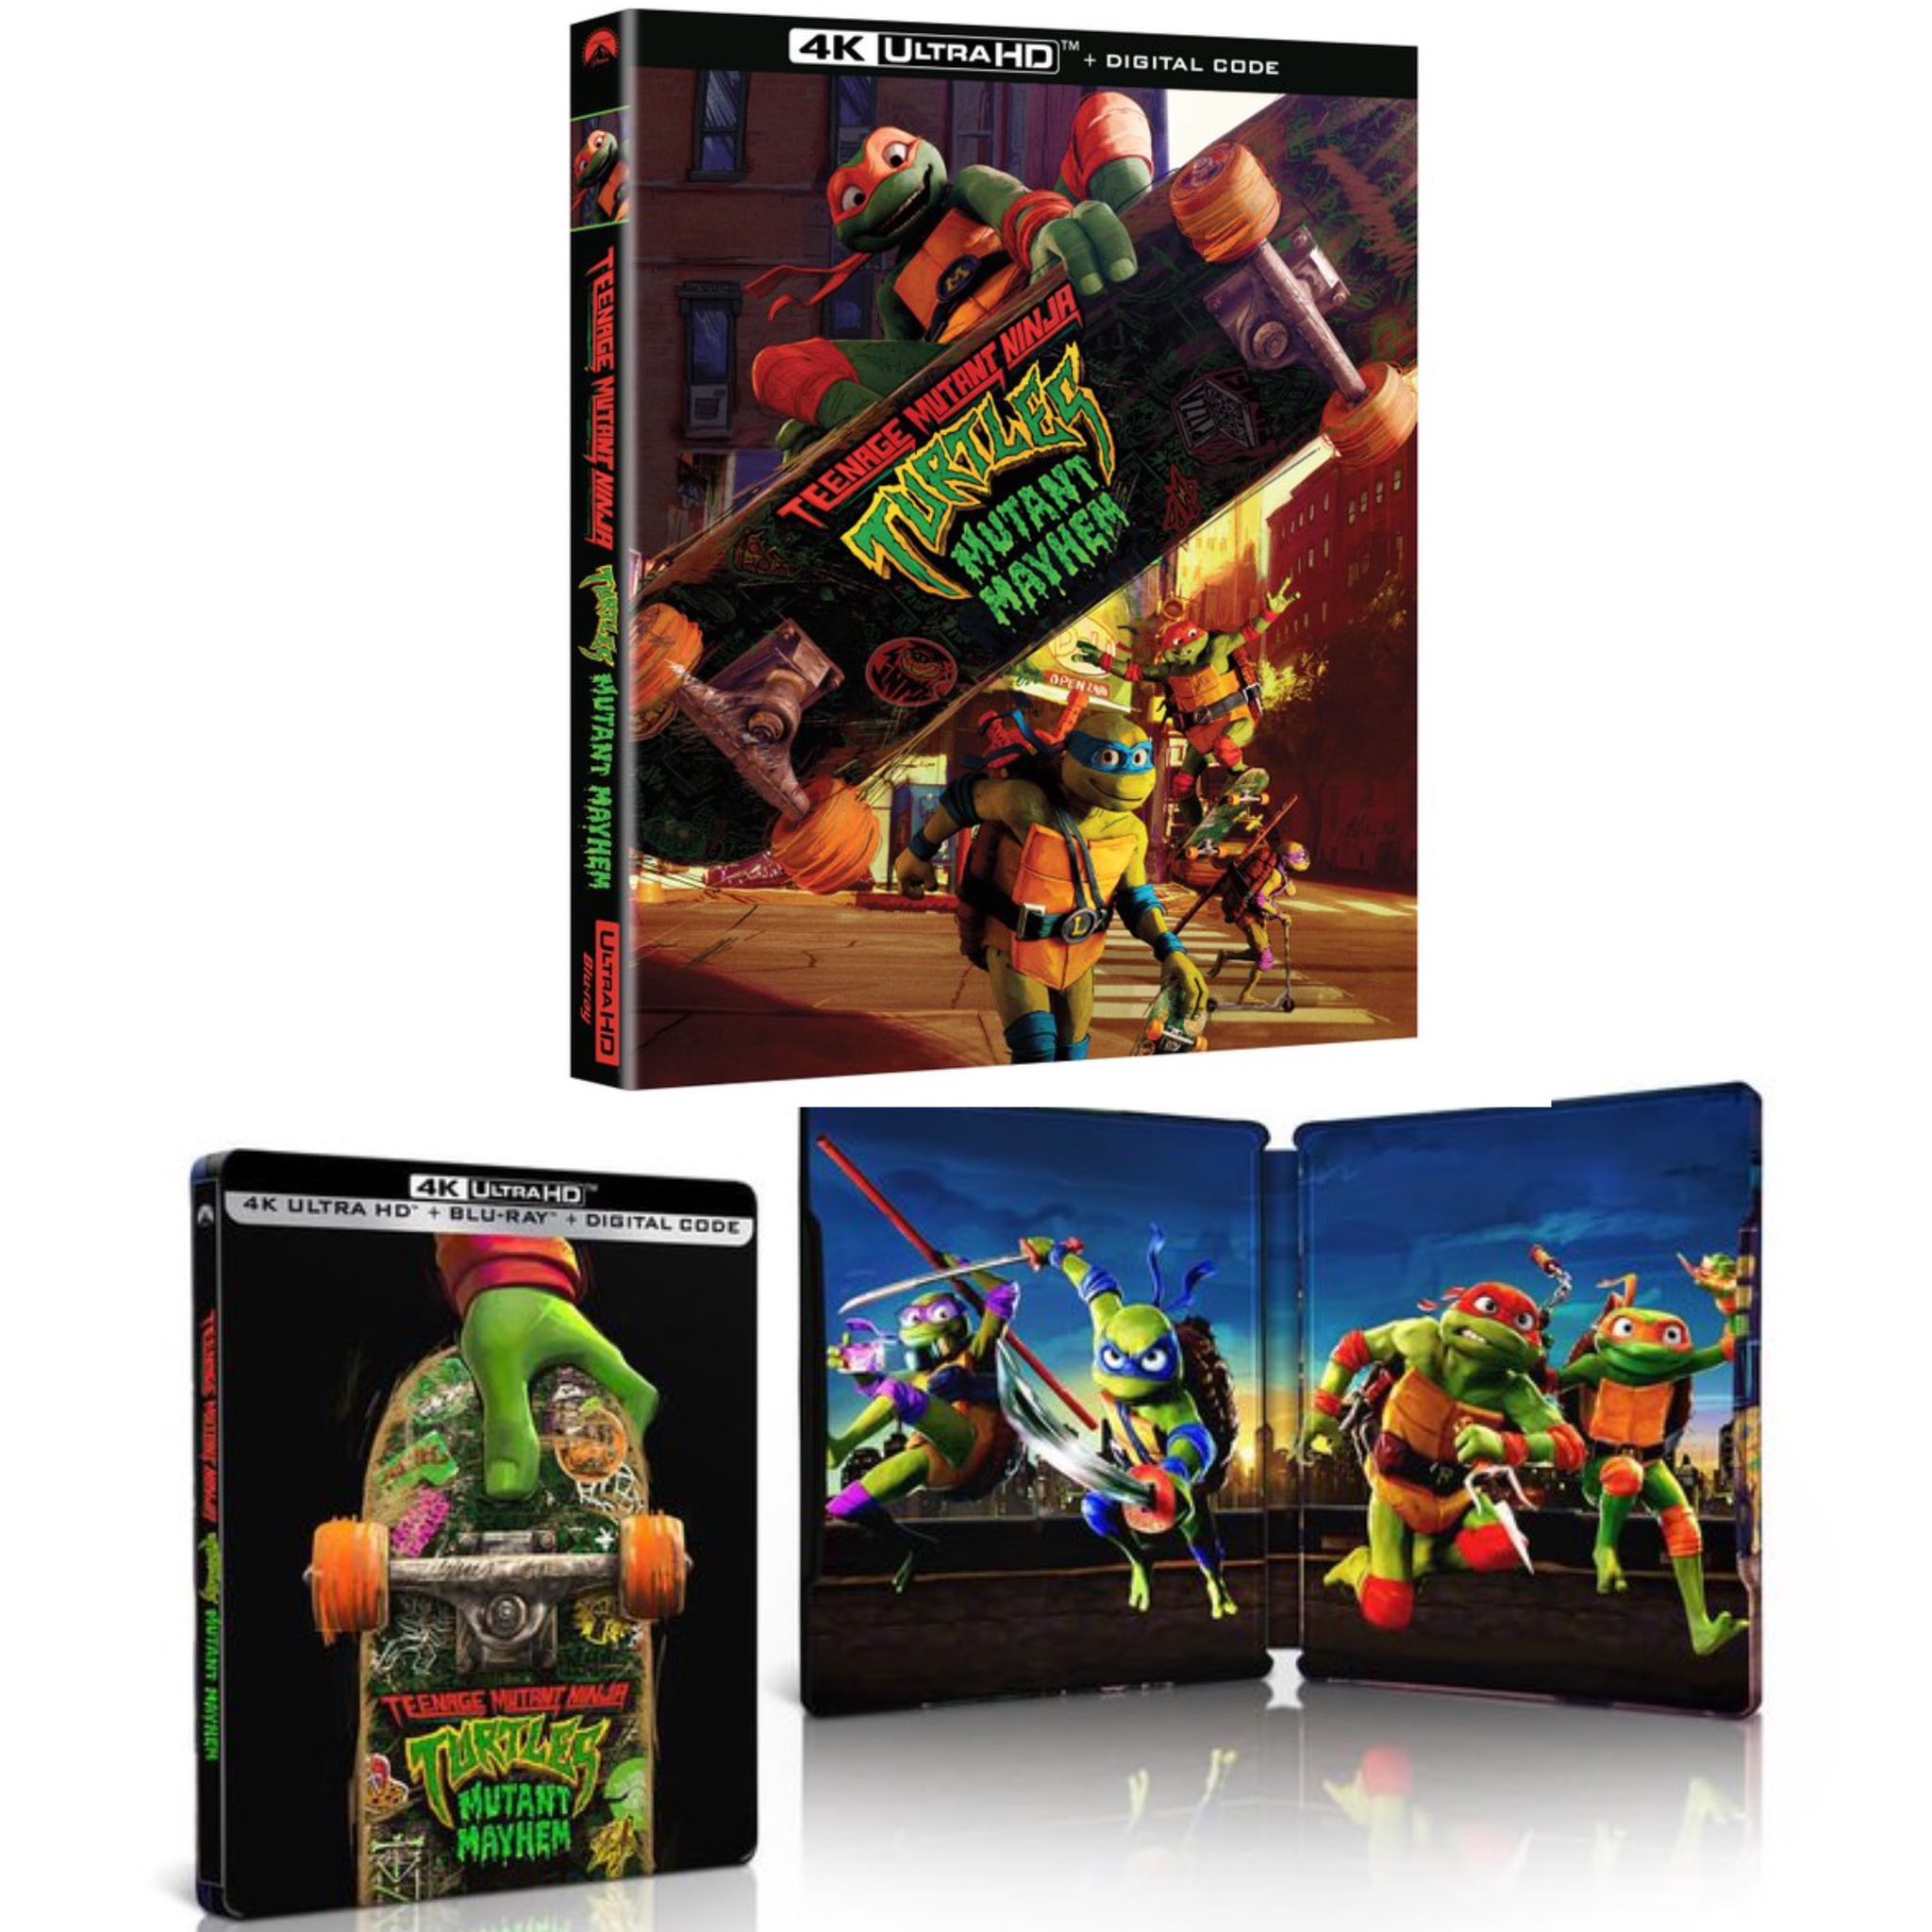 Teenage Mutant Ninja Turtles: Mutant Mayhem 4K Blu-ray